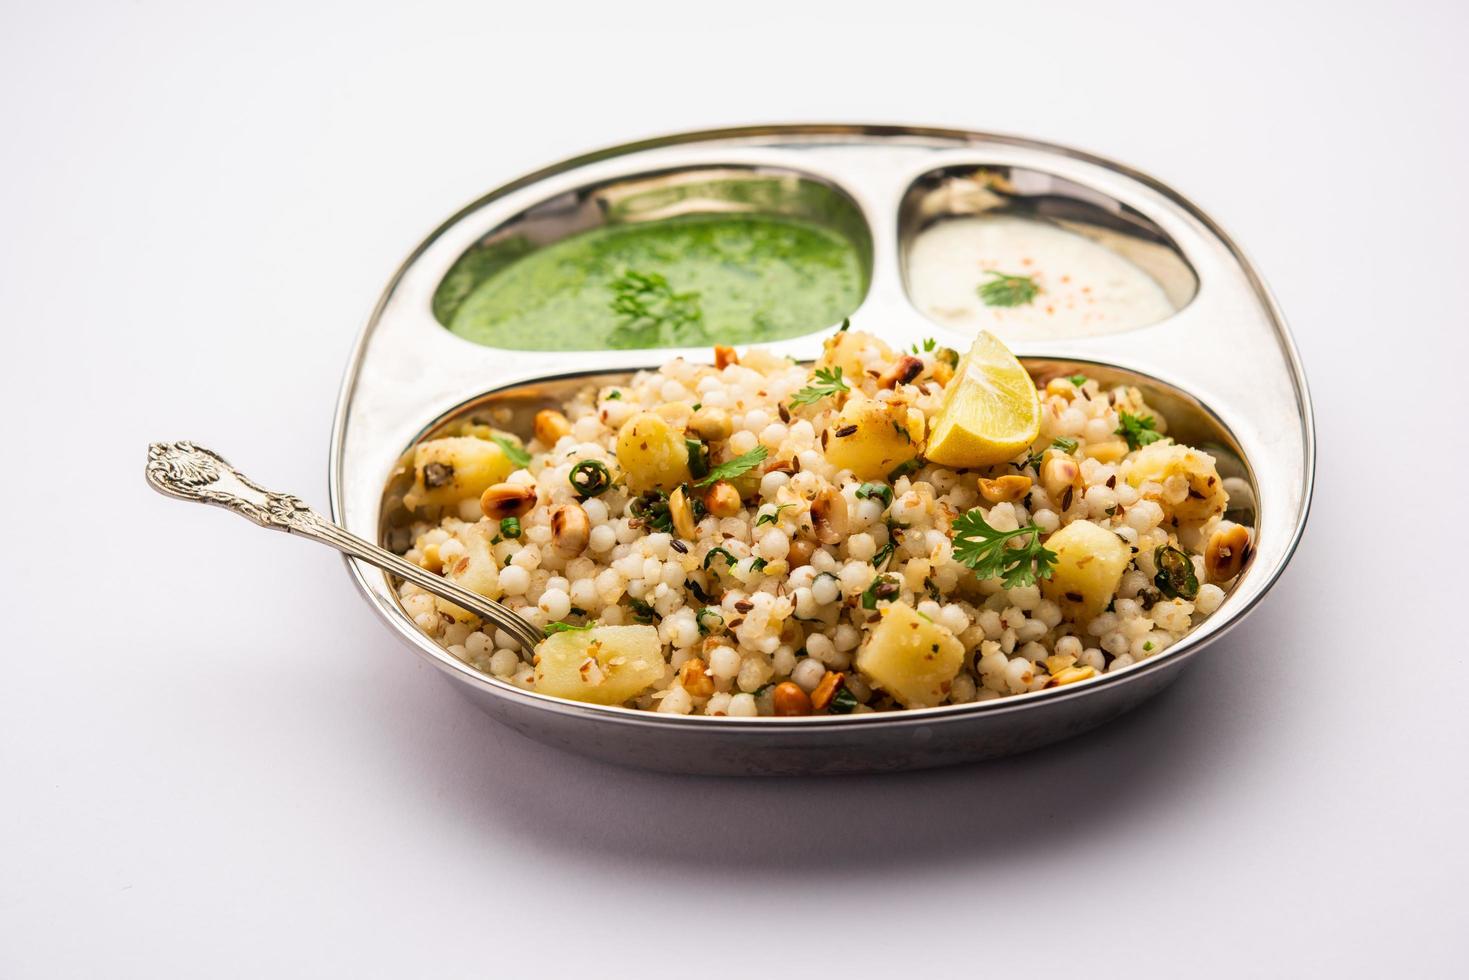 sabudana khichadi - um autêntico prato de maharashtra feito com sementes de sagu, servido com requeijão foto